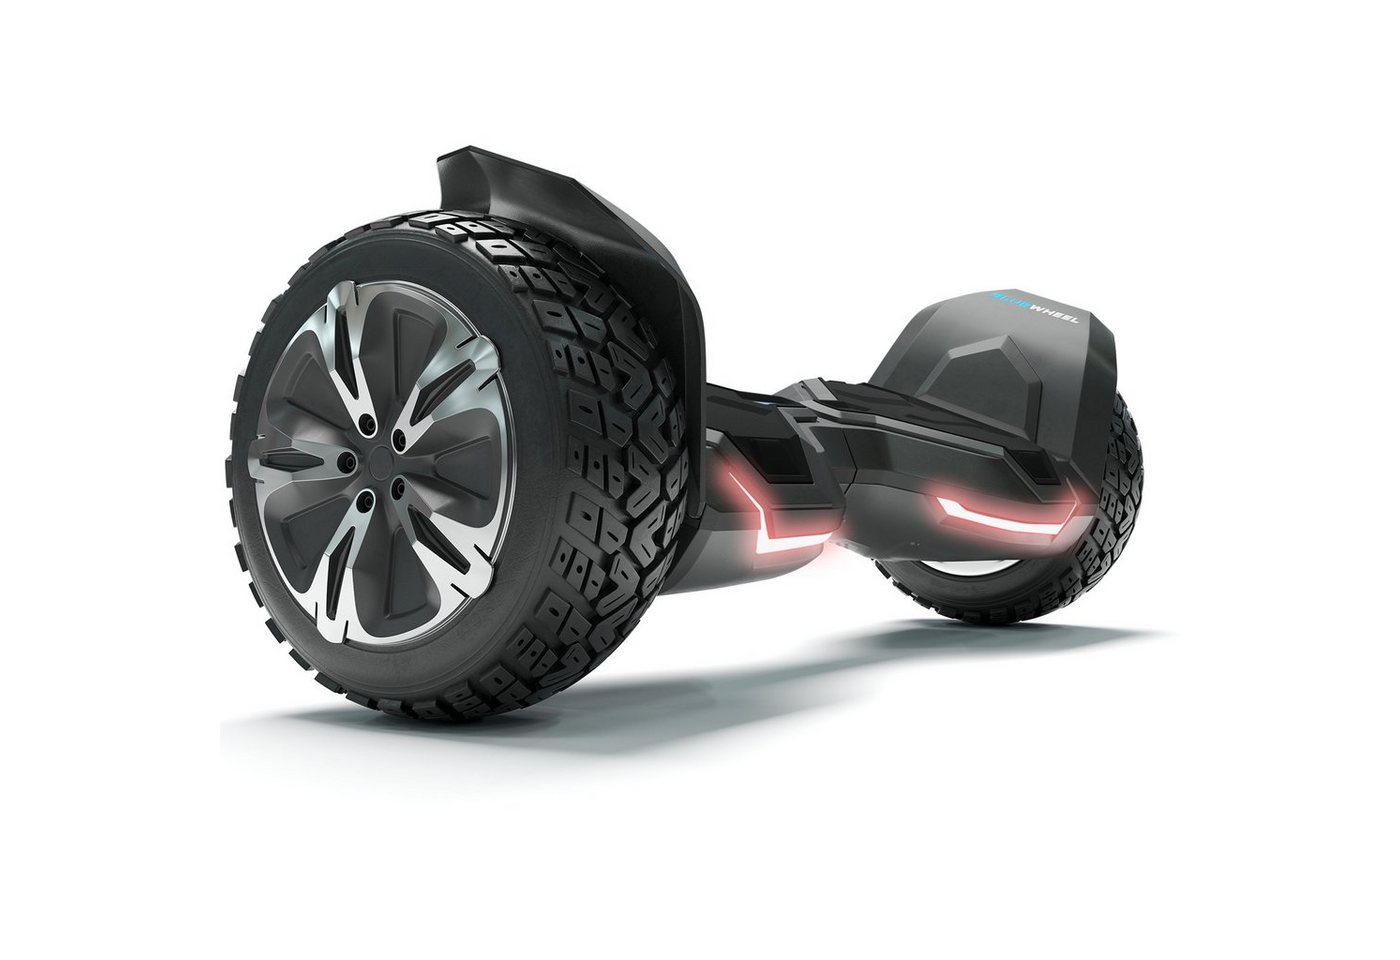 Bluewheel Electromobility Skateboard HX510 (Kinder Sicherheitsmodus & App - Bluetooth), 8.5 Premium Offroad Hoverboard Bluewheel HX510 SUV" von Bluewheel Electromobility